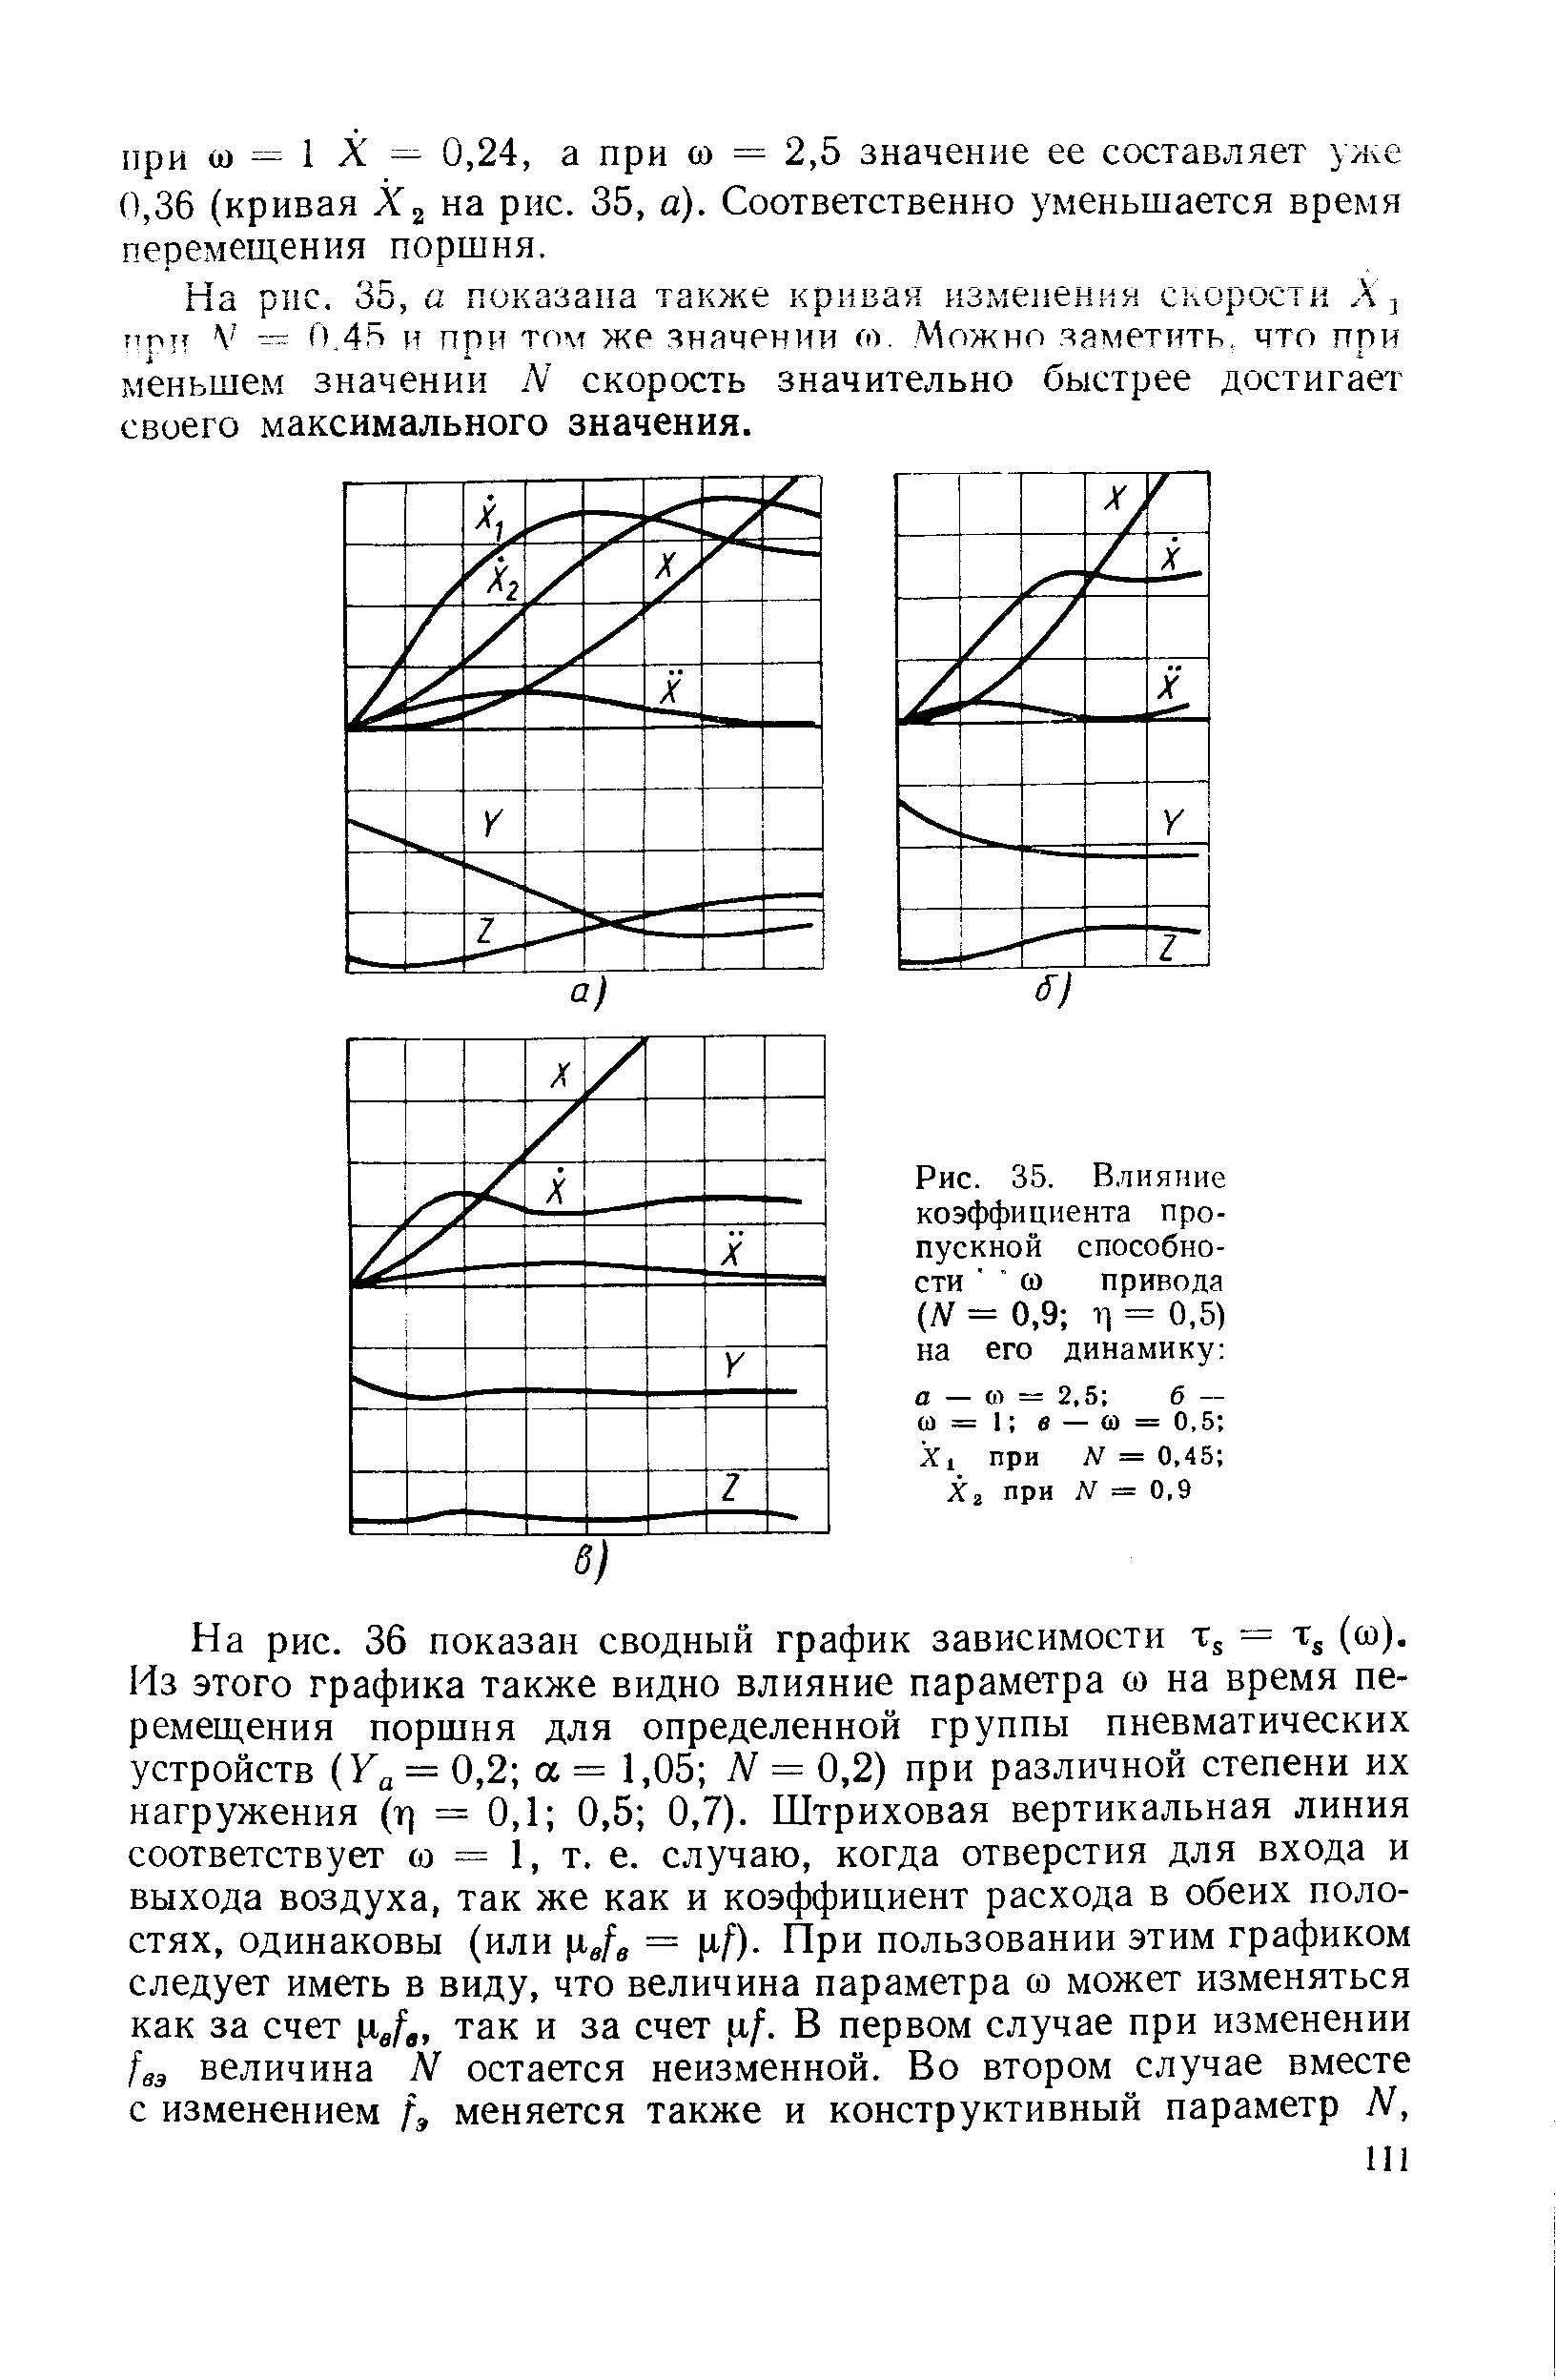 Рис. 35. В.чияиие коэффициента пропускной способности 0) привода (Ы = 0,9 11 = 0,5) на его динамику 
